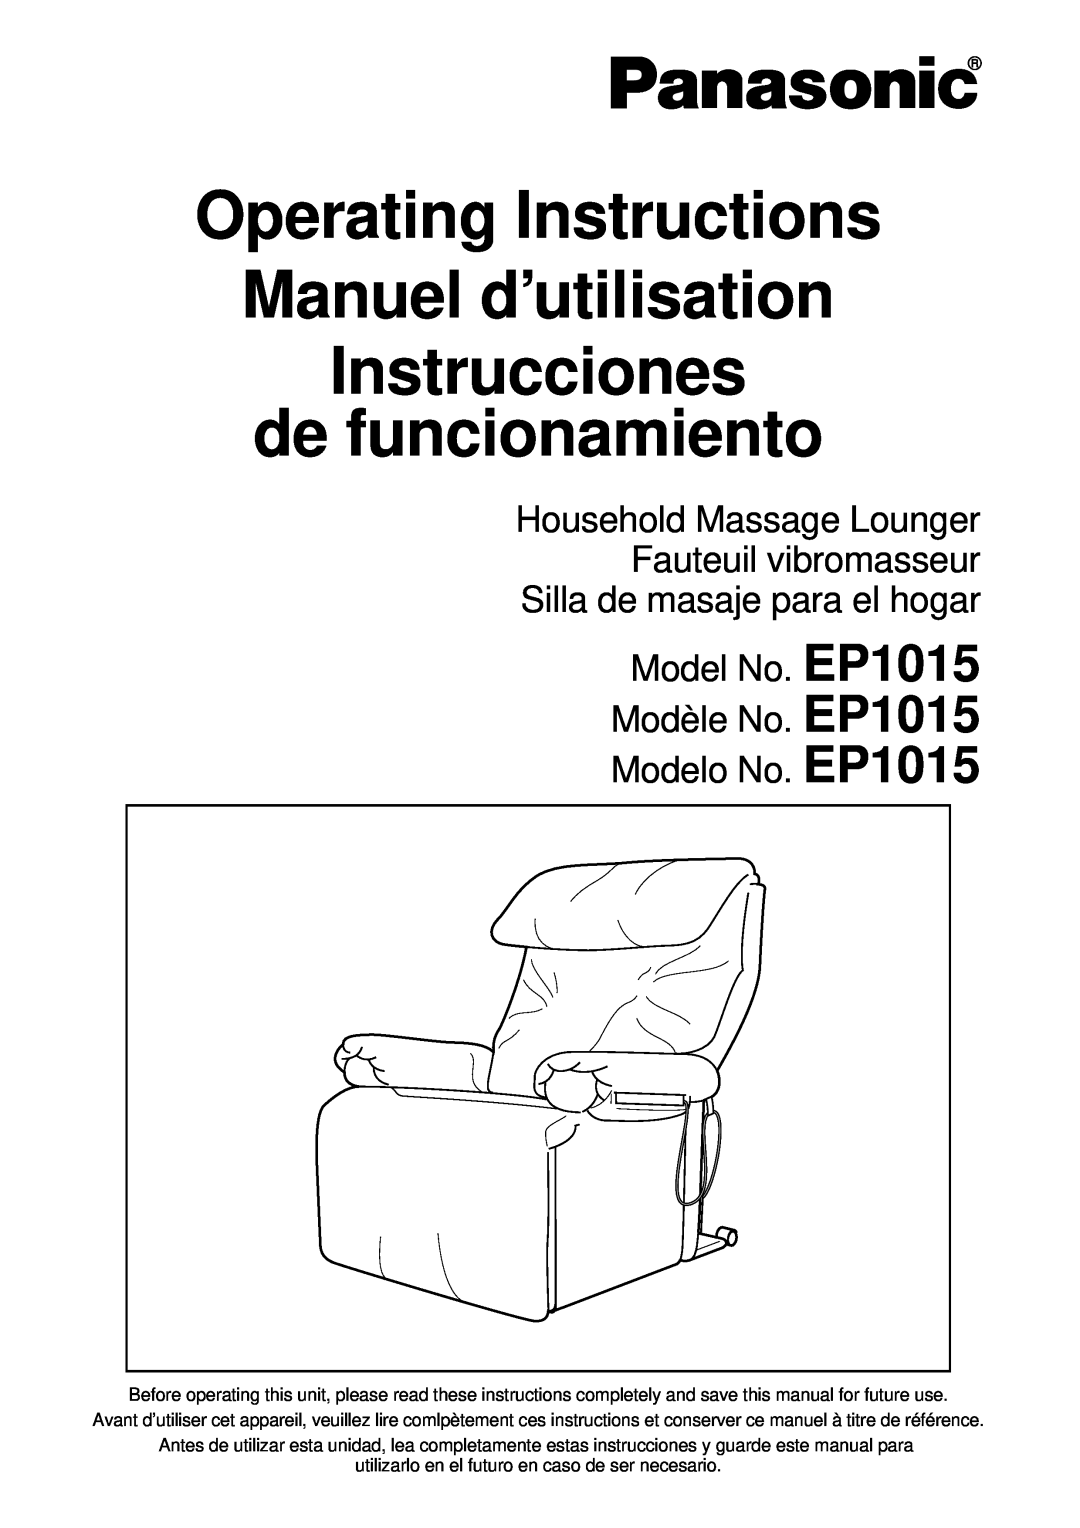 Panasonic manuel dutilisation EP1015 EP1015 EP1015, Operating Instructions Manuel d’utilisation 